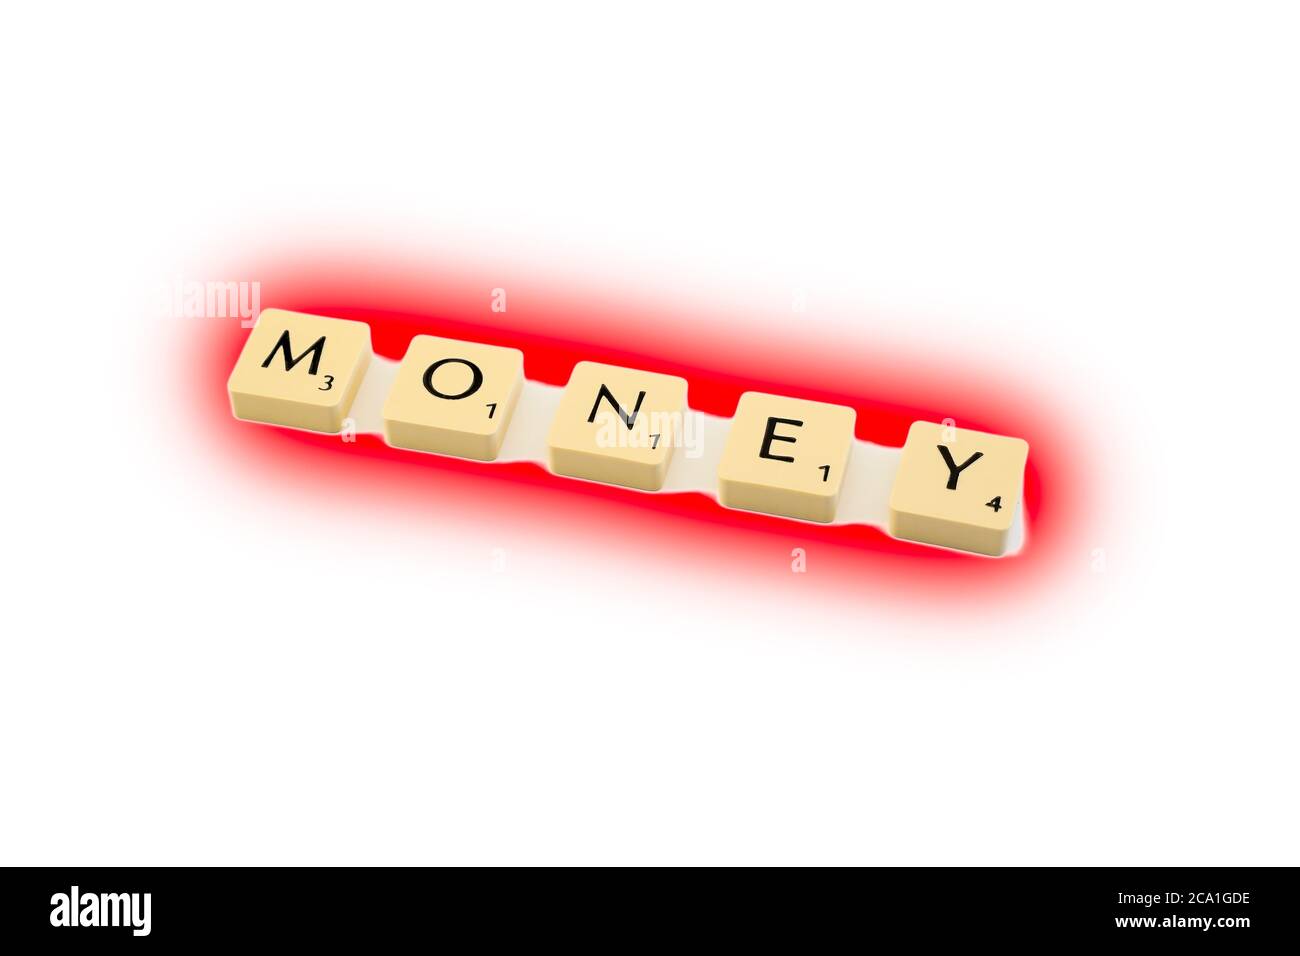 Scrabble cartas de juego de tablero que deletrean la palabra DINERO resaltado en rojo, fondo blanco. Concepto en el rojo, dificultad financiera. Foto de stock